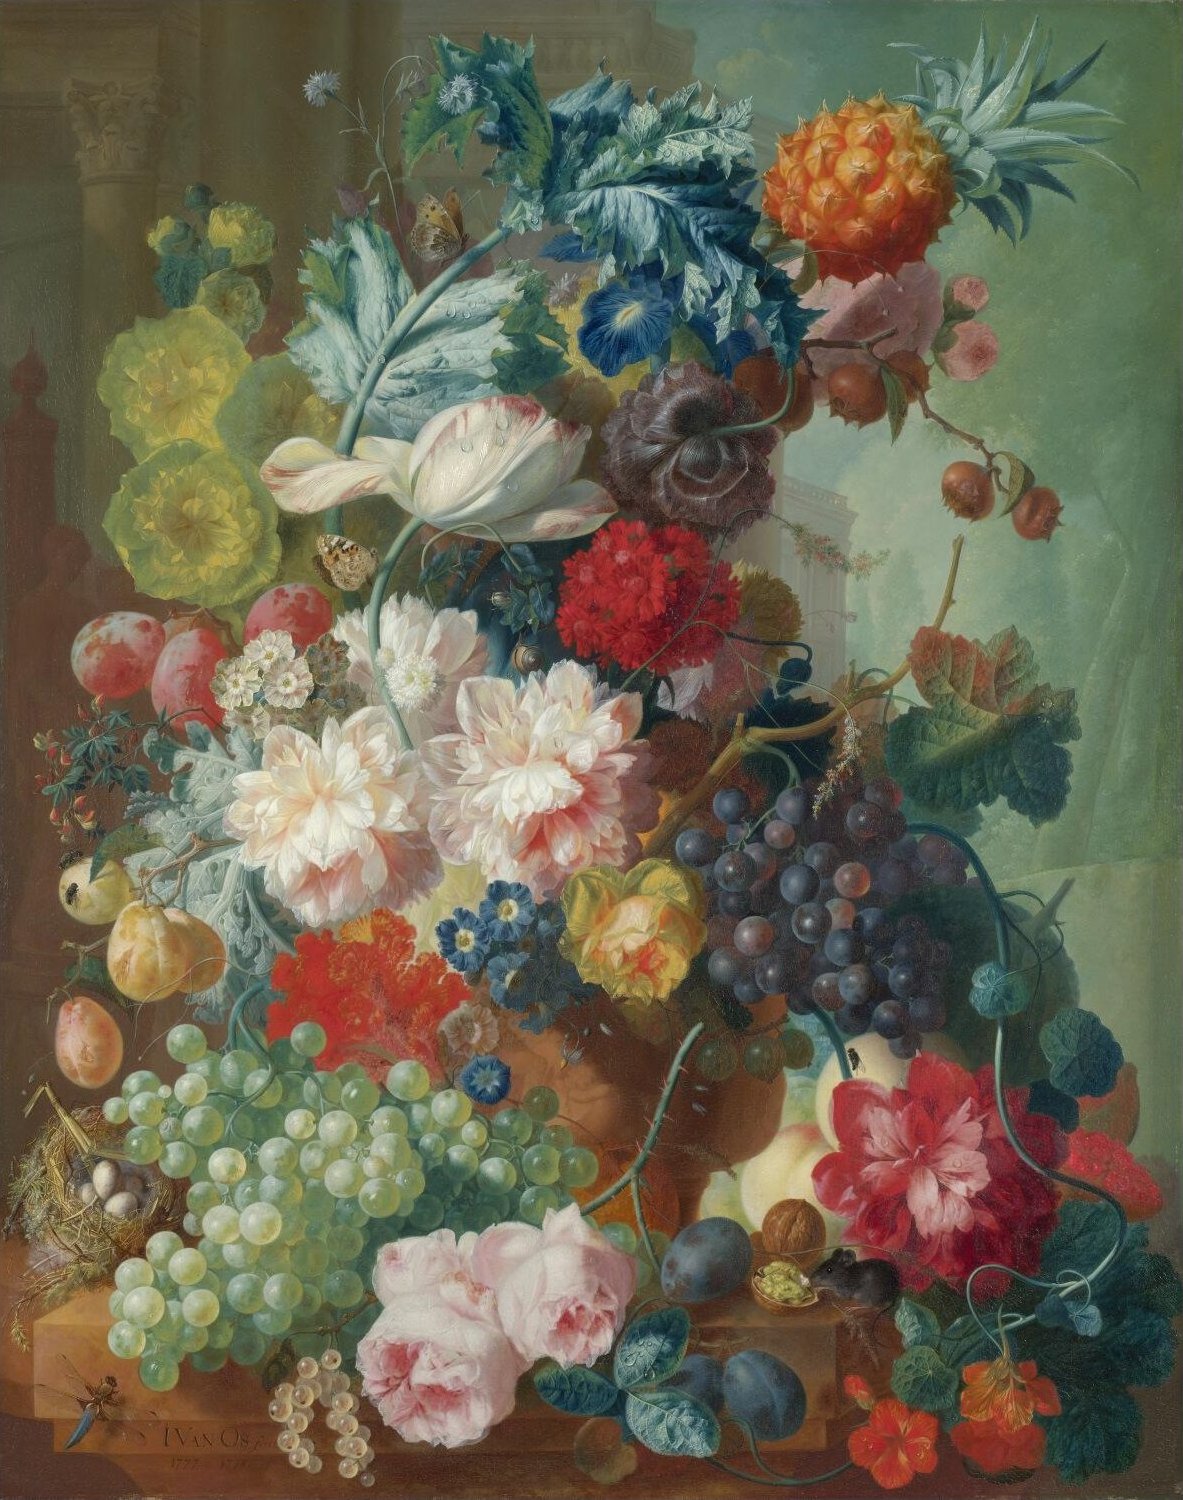 Fleurs dans un vase en terre cuite by Jan Huysum - 1736-37 - 133.5 x 91.5 cm 